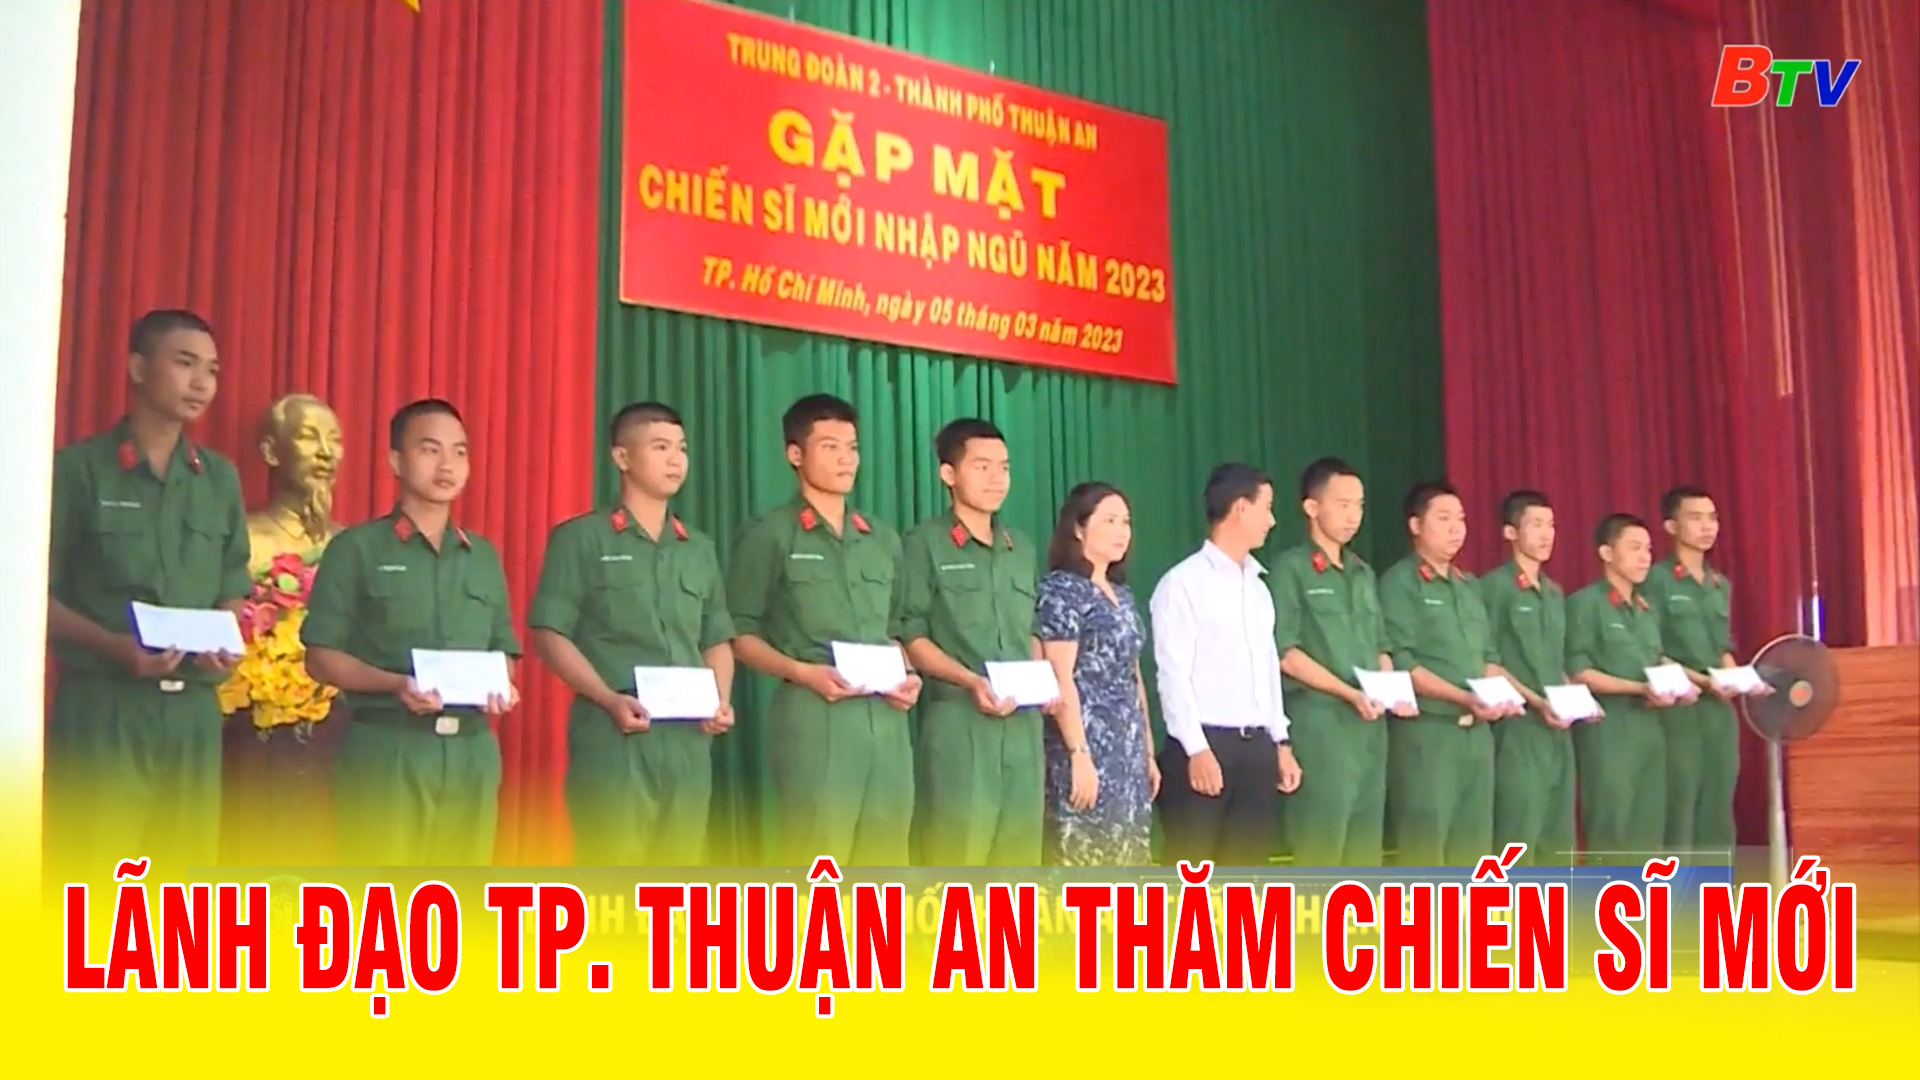 Lãnh đạo thành phố Thuận An thăm chiến sĩ mới 